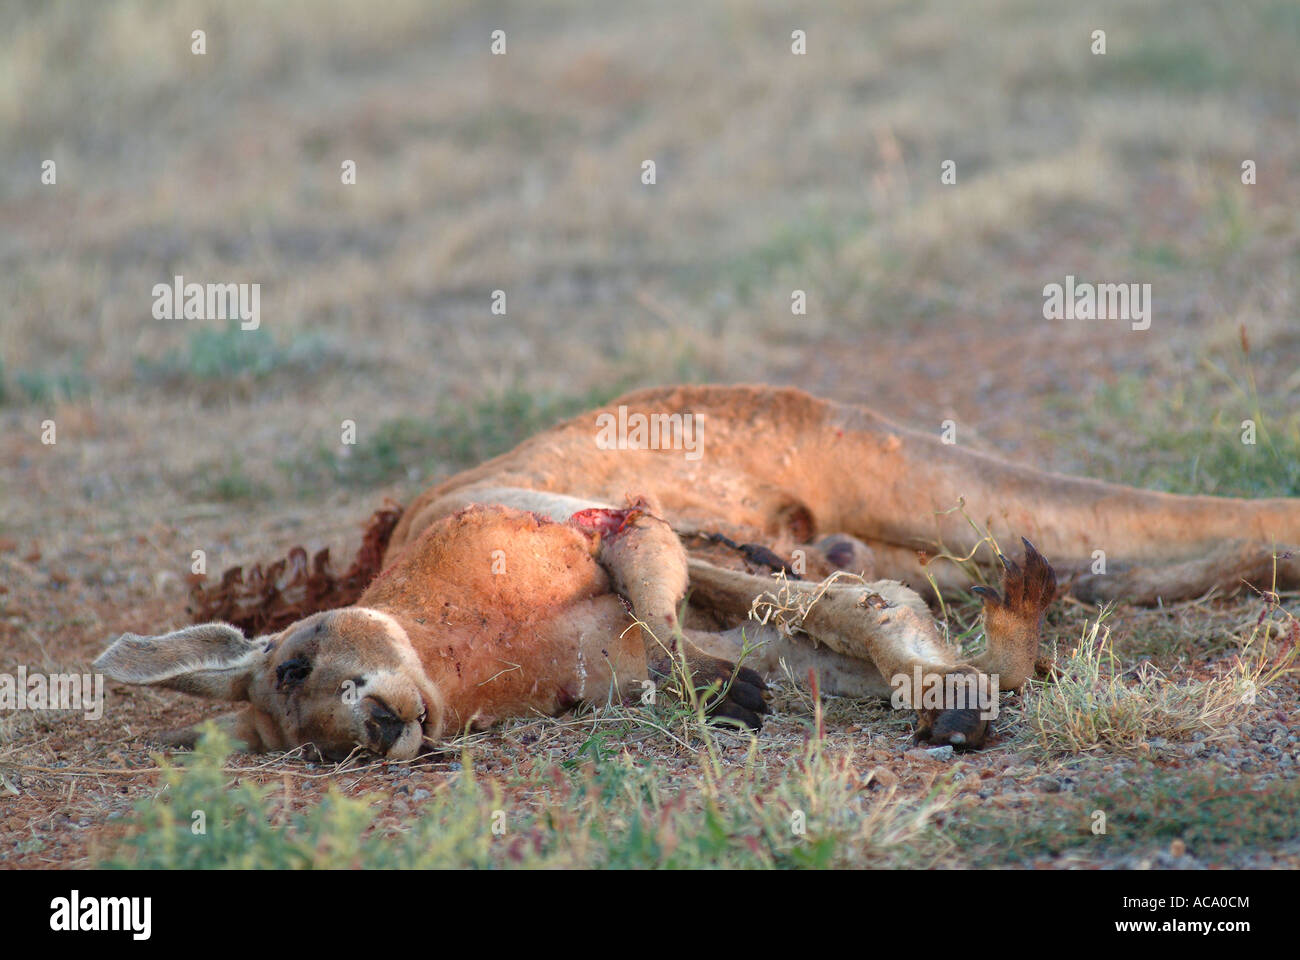 Kangaroo (Macropus fuliginosus), roadkill, Australien Stock Photo